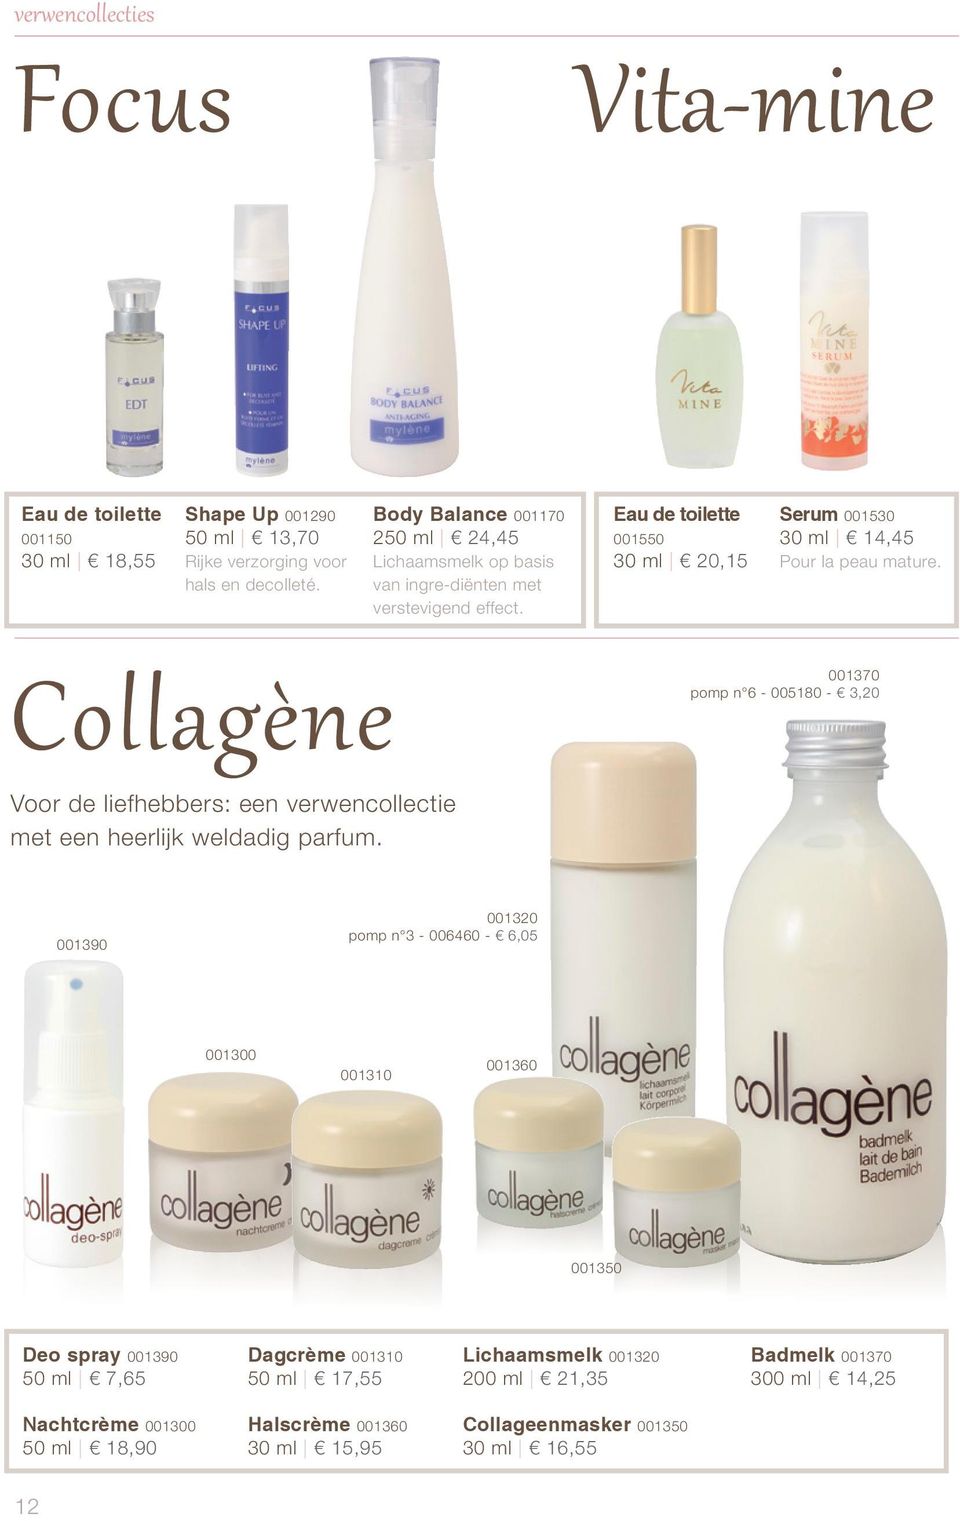 Collagène 001370 pomp n 6-005180 - 3,20 Voor de liefhebbers: een verwencollectie met een heerlijk weldadig parfum.